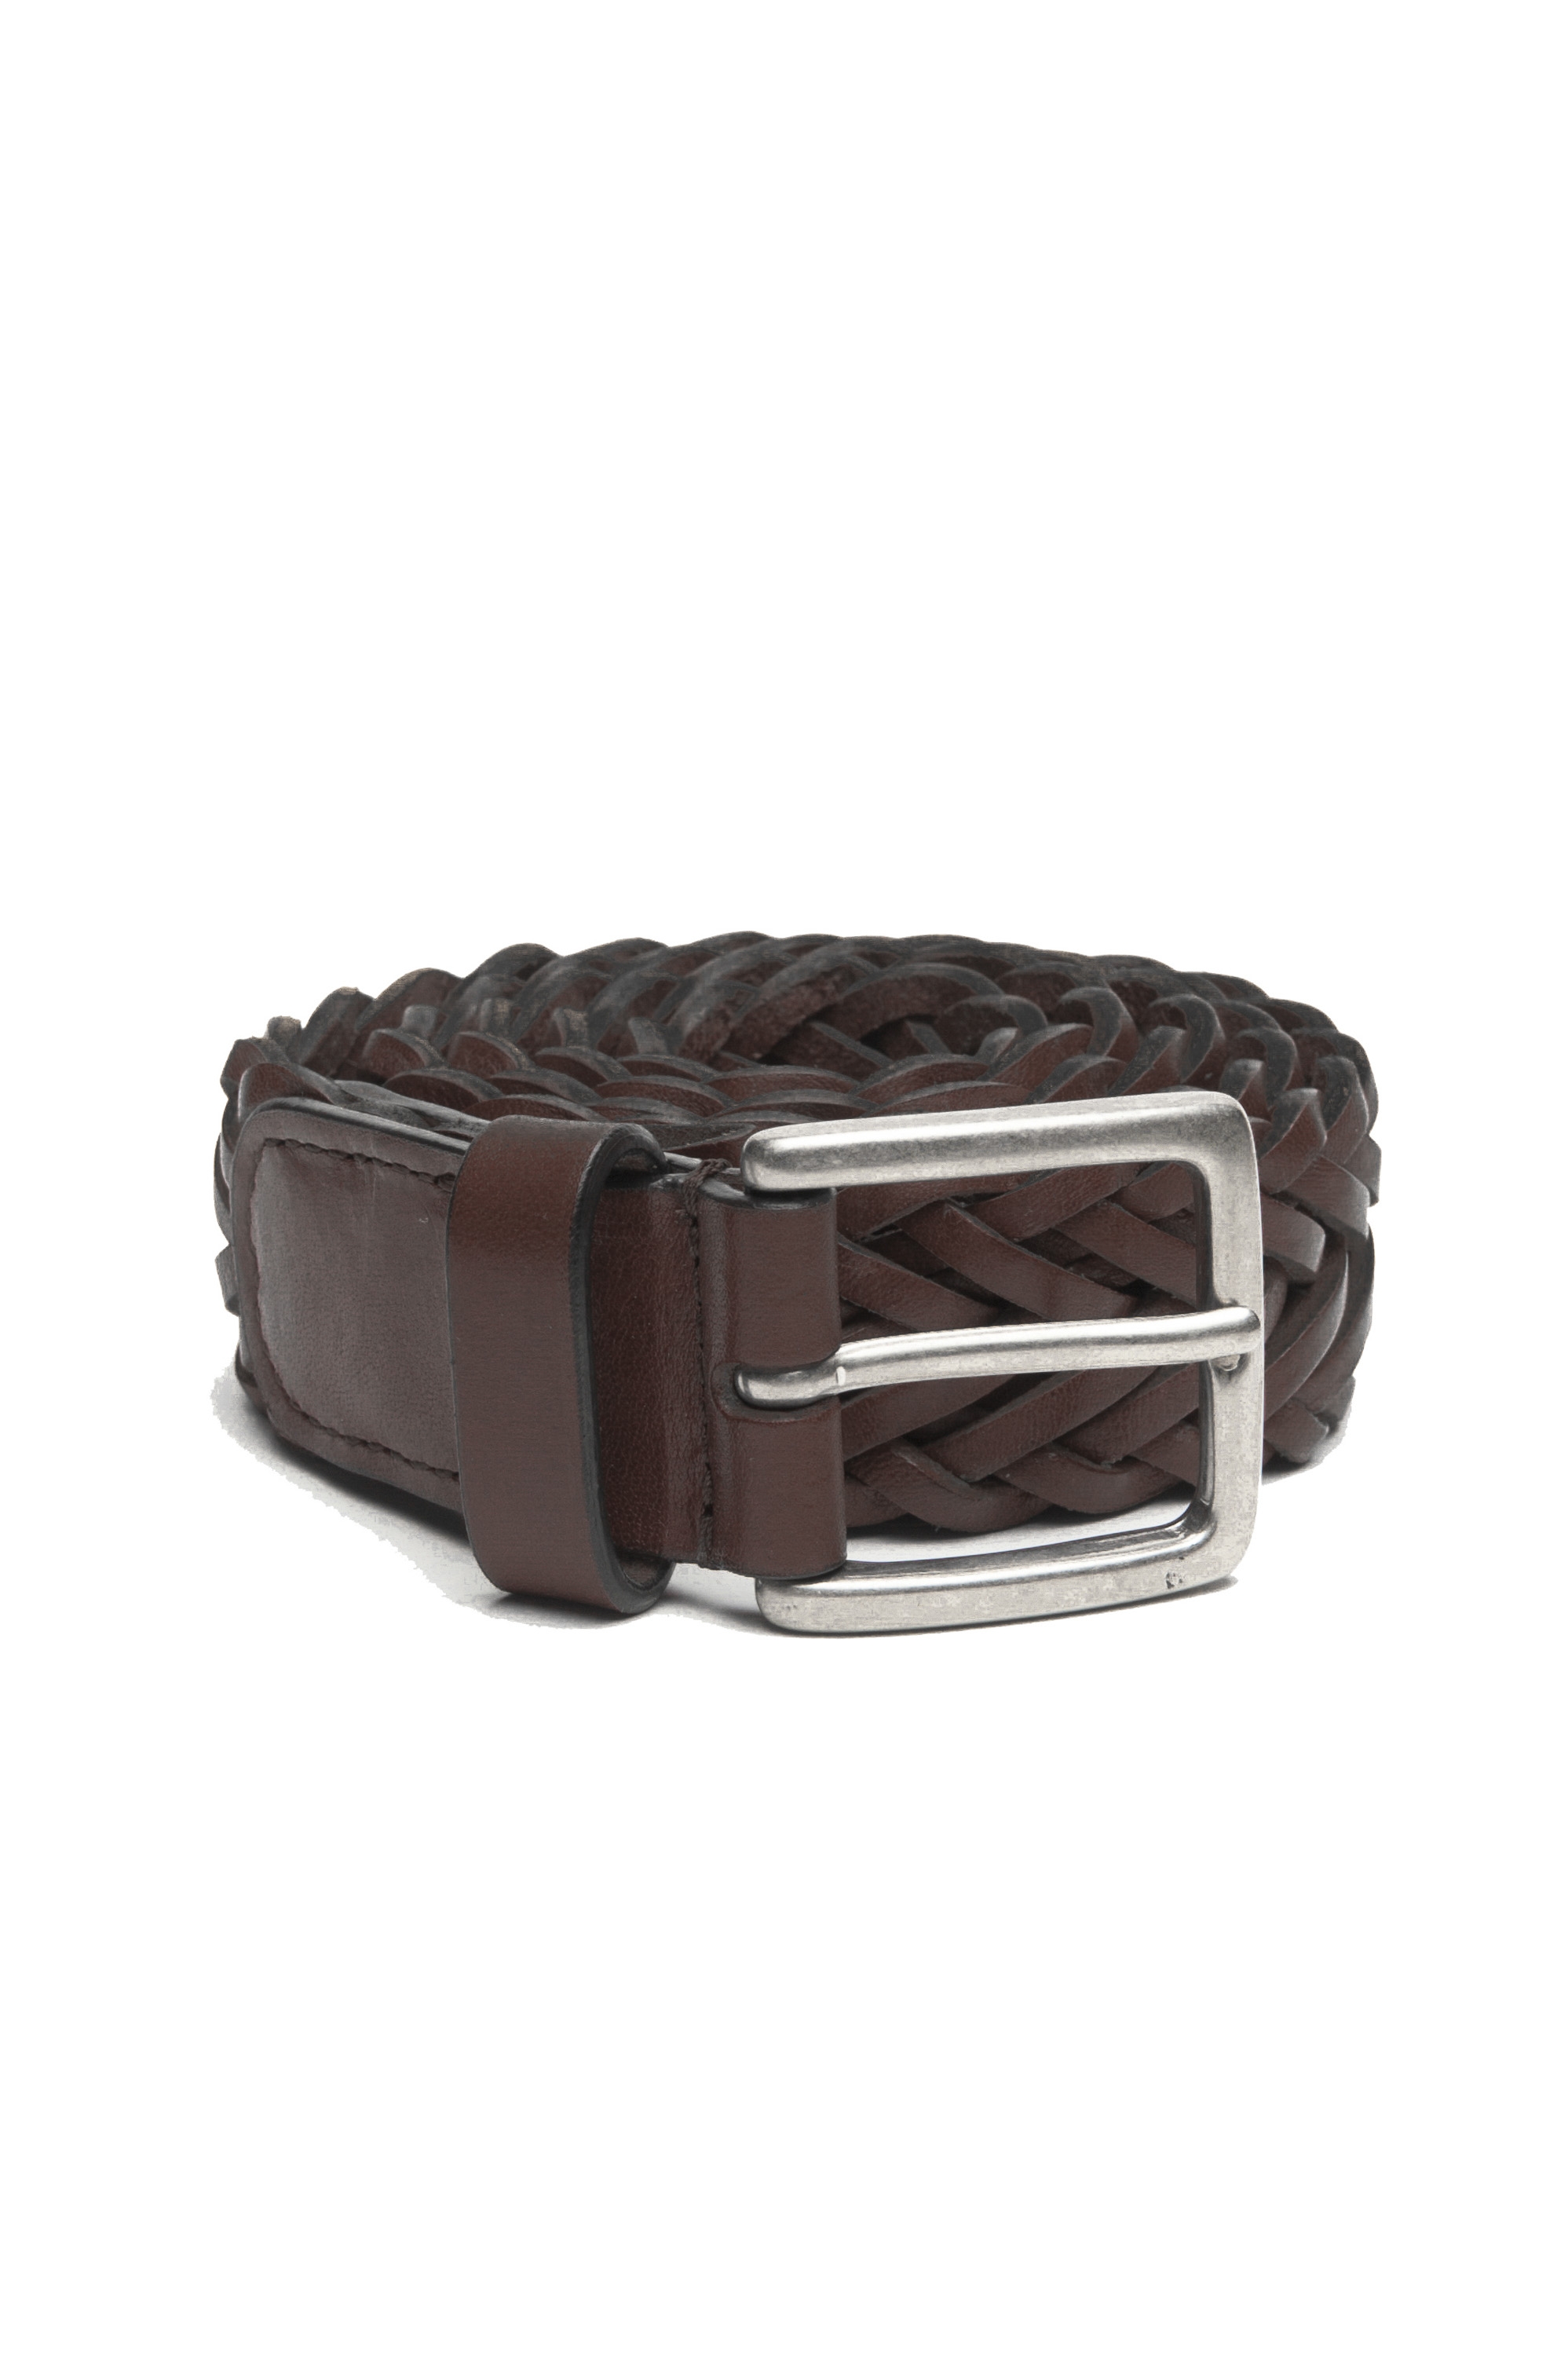 SBU 03022_2020AW Cinturón de cuero trenzado marrón 3.5 centímetros 01